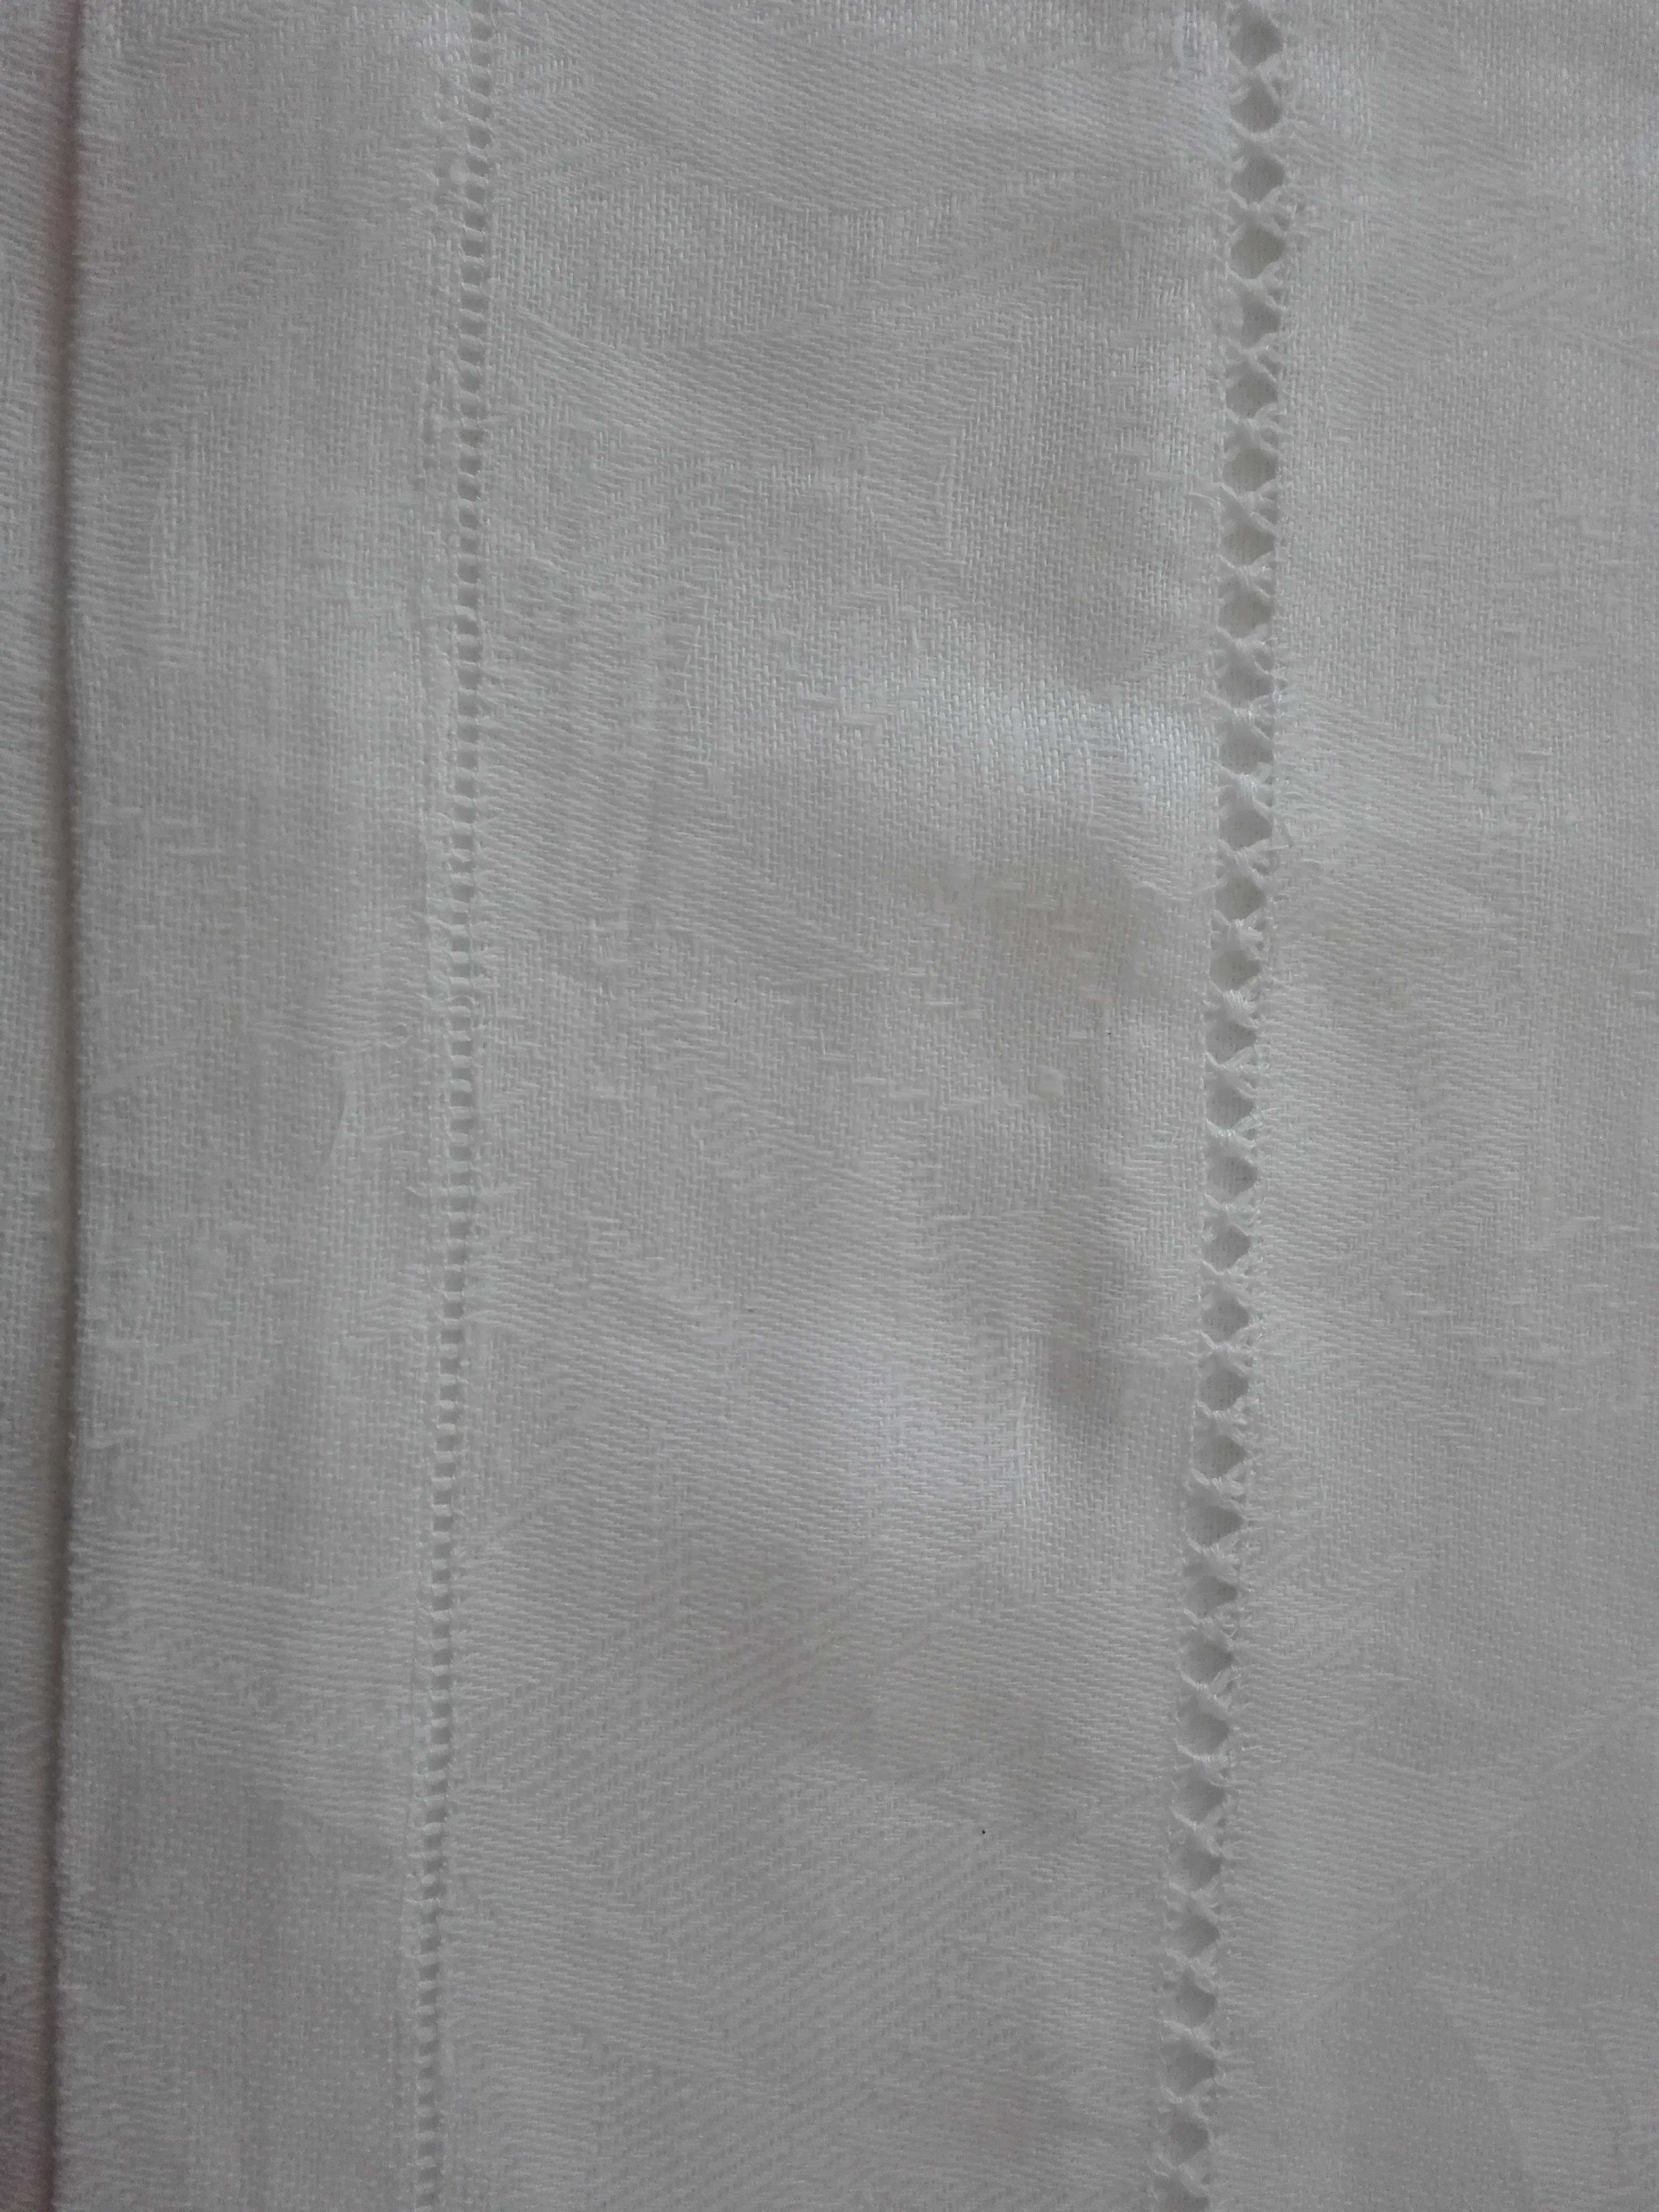 toalhas de mesa Brancas com ajoures, meio linho, Jacquard